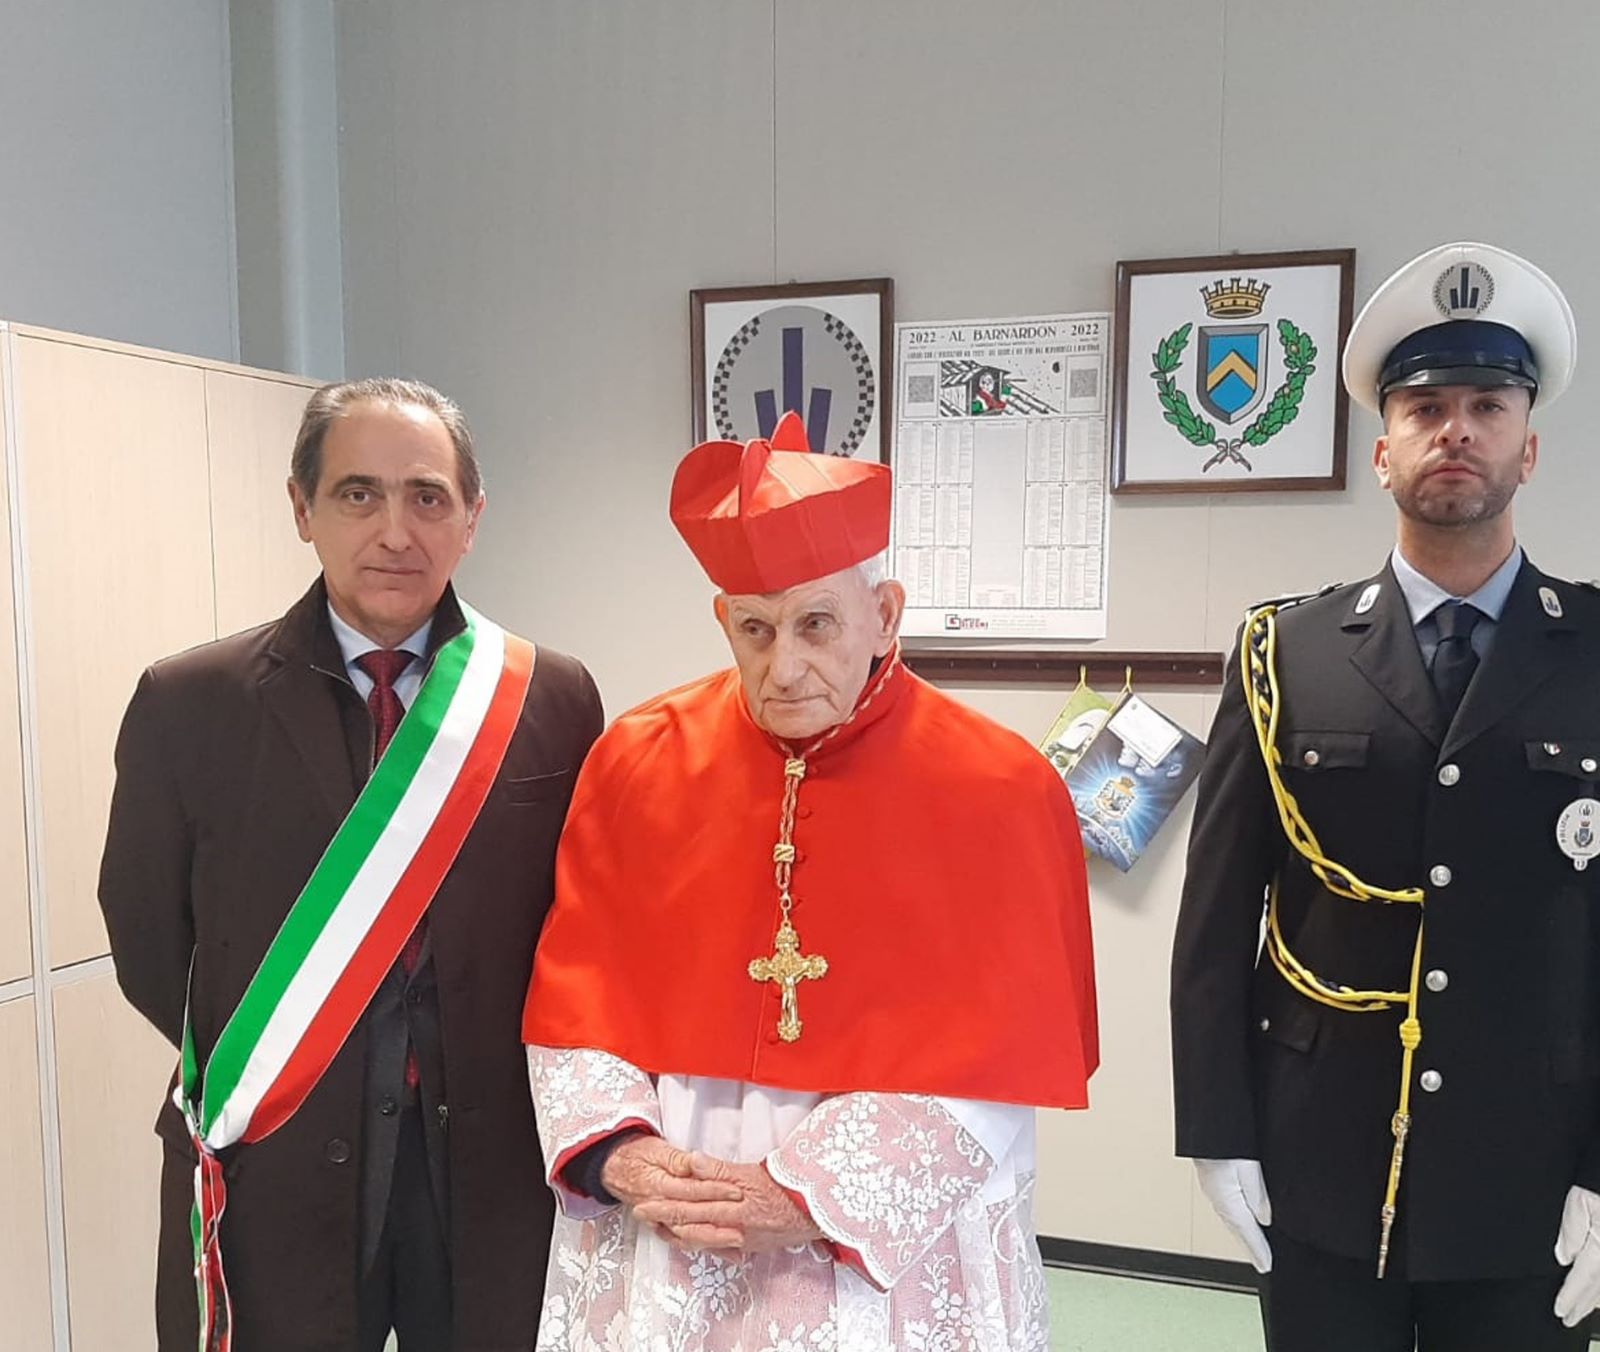 Il cardinale Ernest Simoni in visita a Mirandola